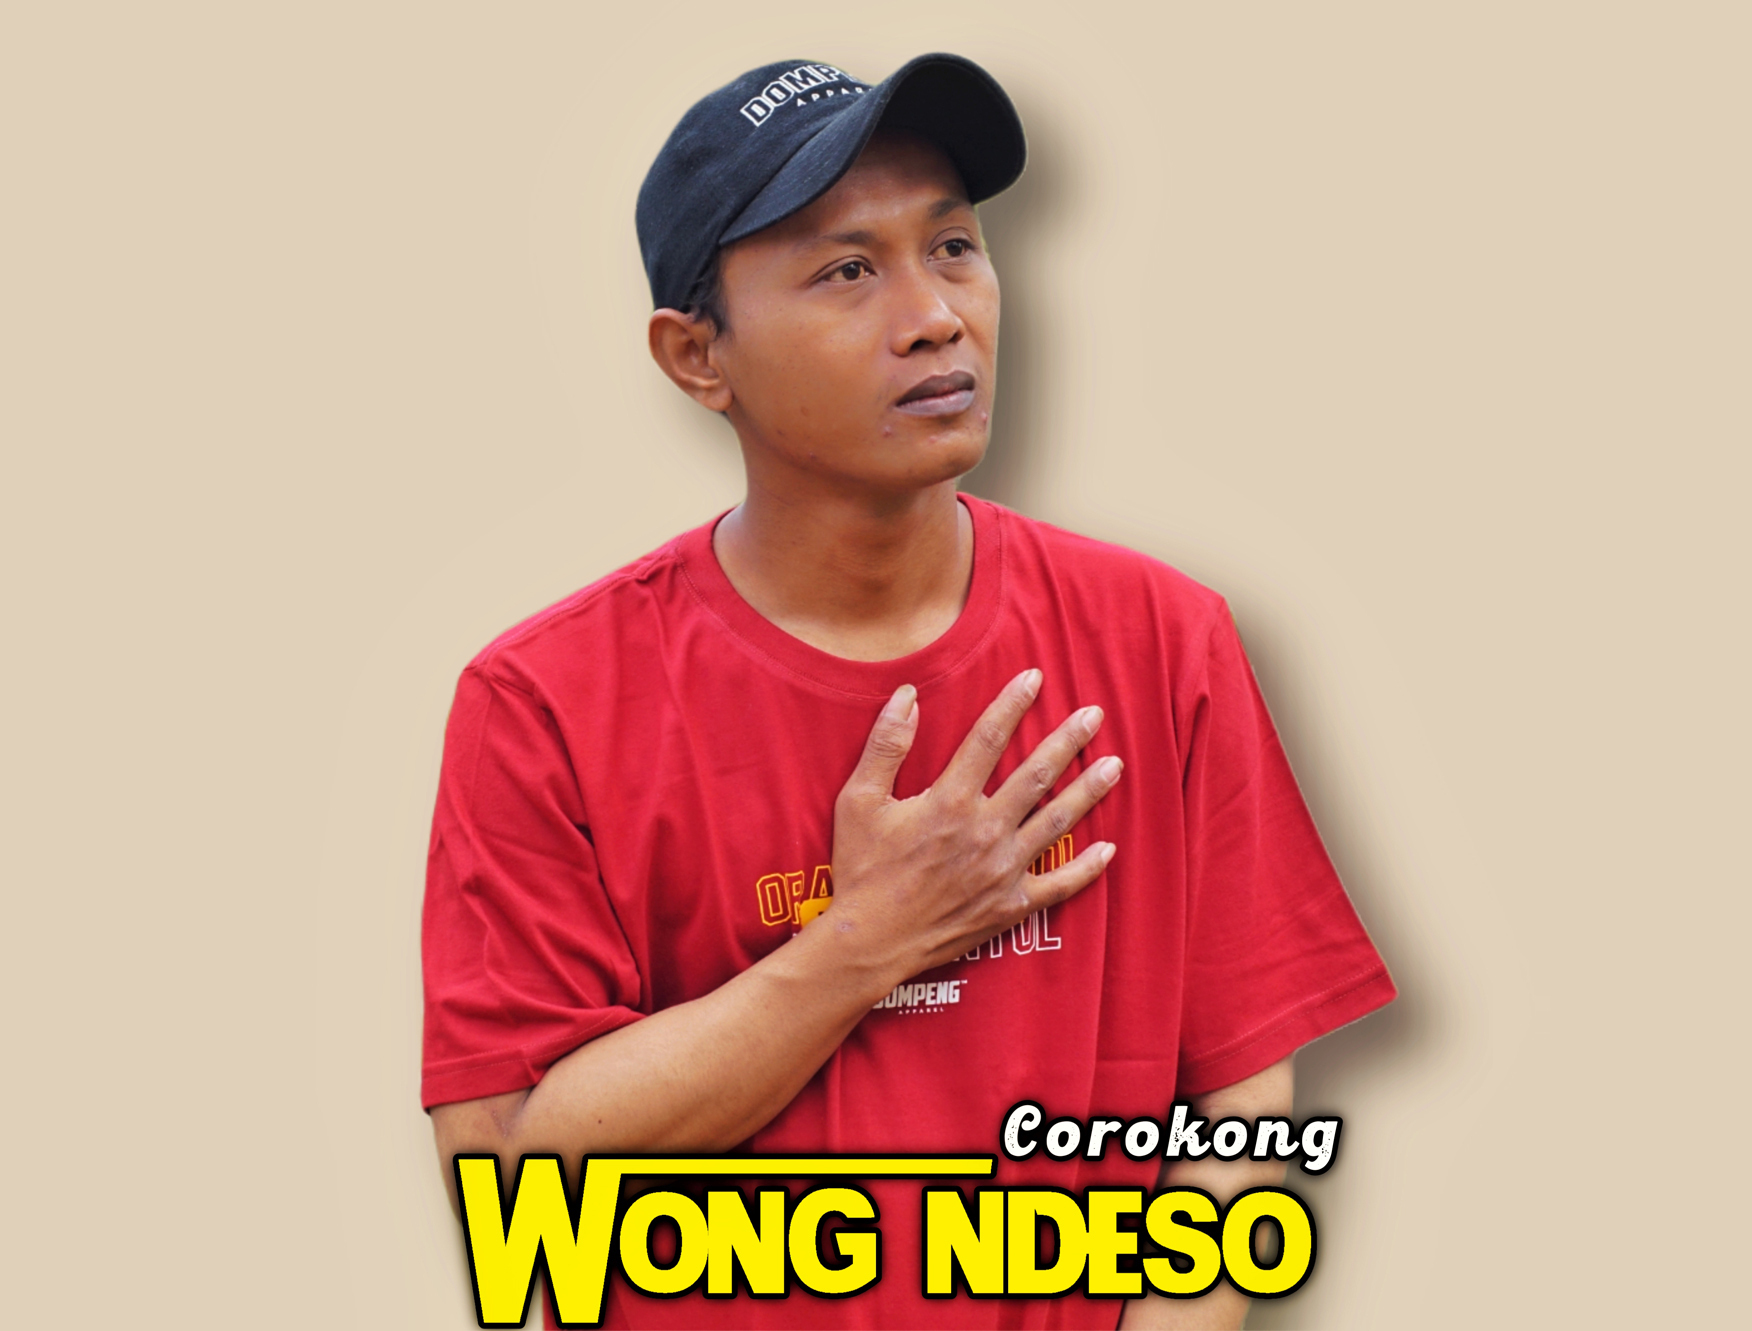 Pelantun lagu Wong Ndeso Corokong, lagu ini kental sekali dengan budaya, sosial kemasyarakatan warga Kabupaten Pati. MUHAMMAD NURSEHA/LINGKAR.CO